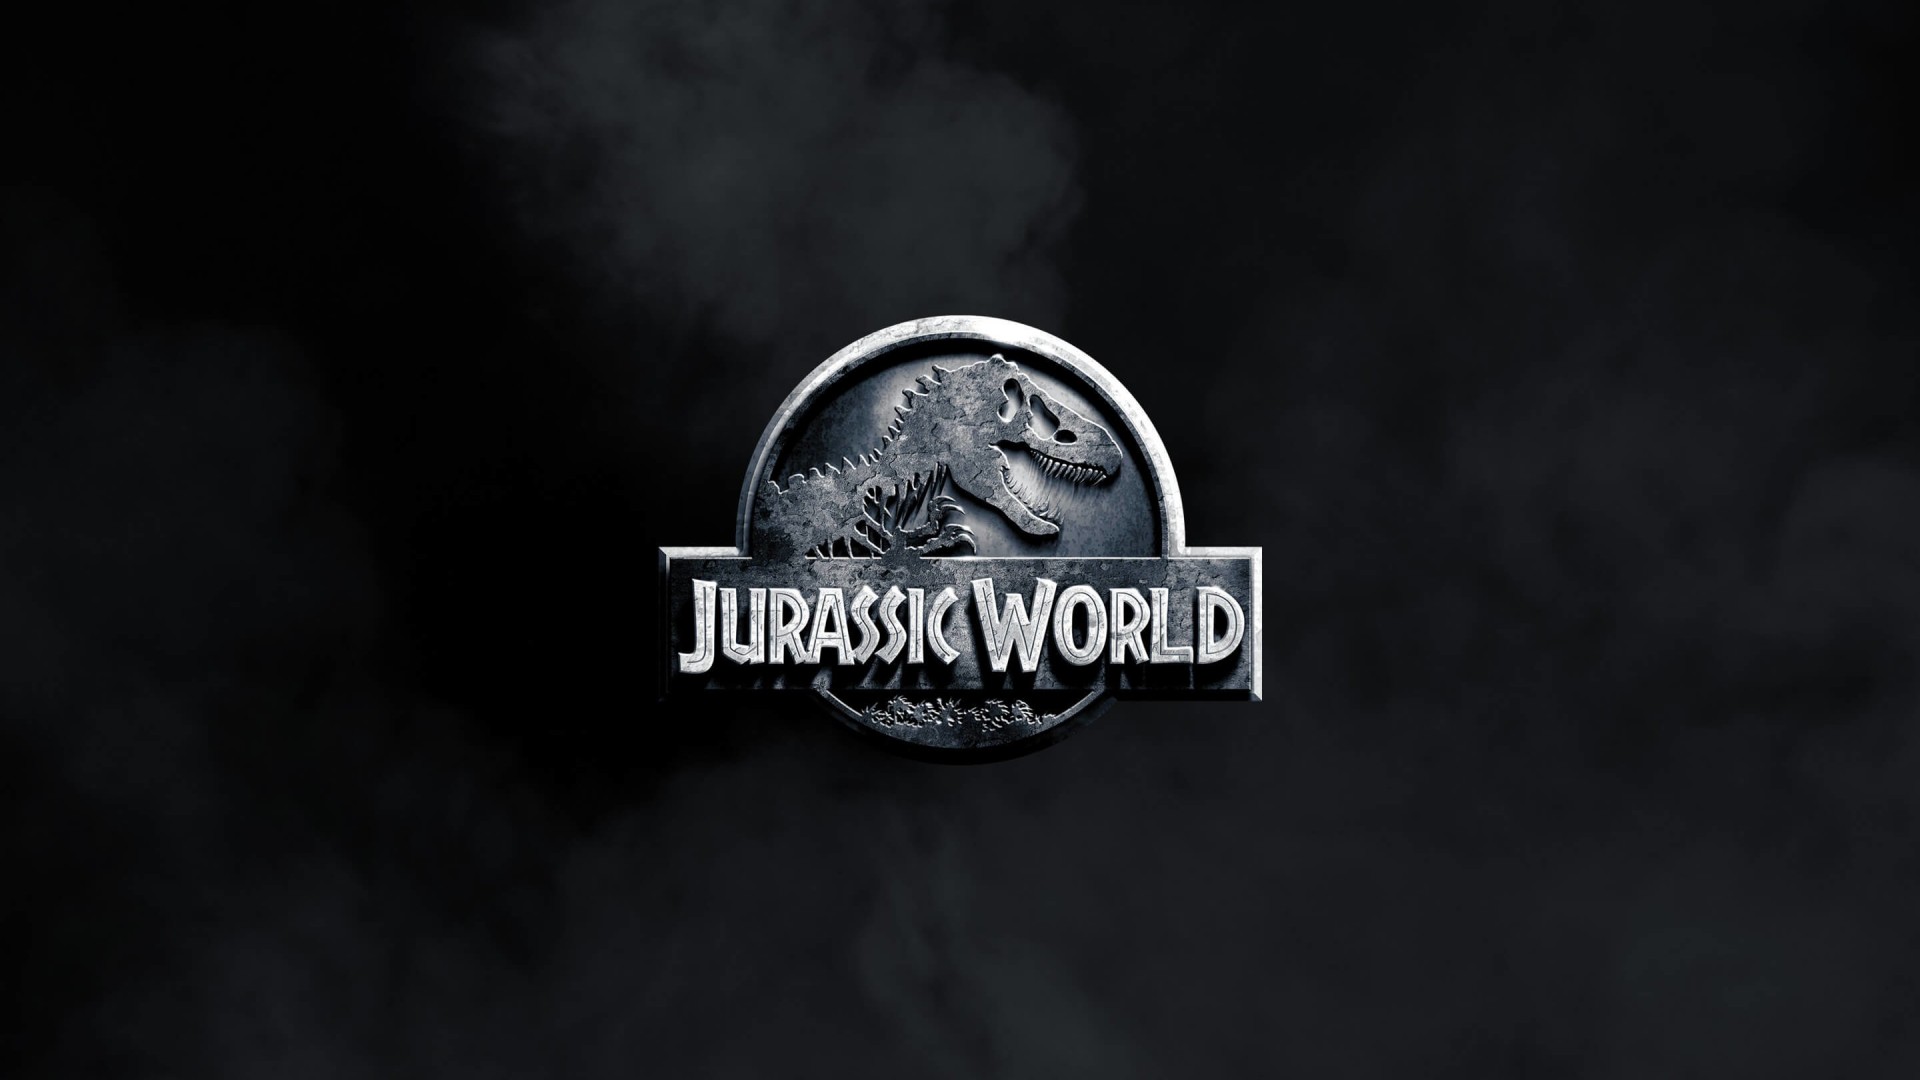 Jurassic World Wallpaper for Desktop 1920x1080